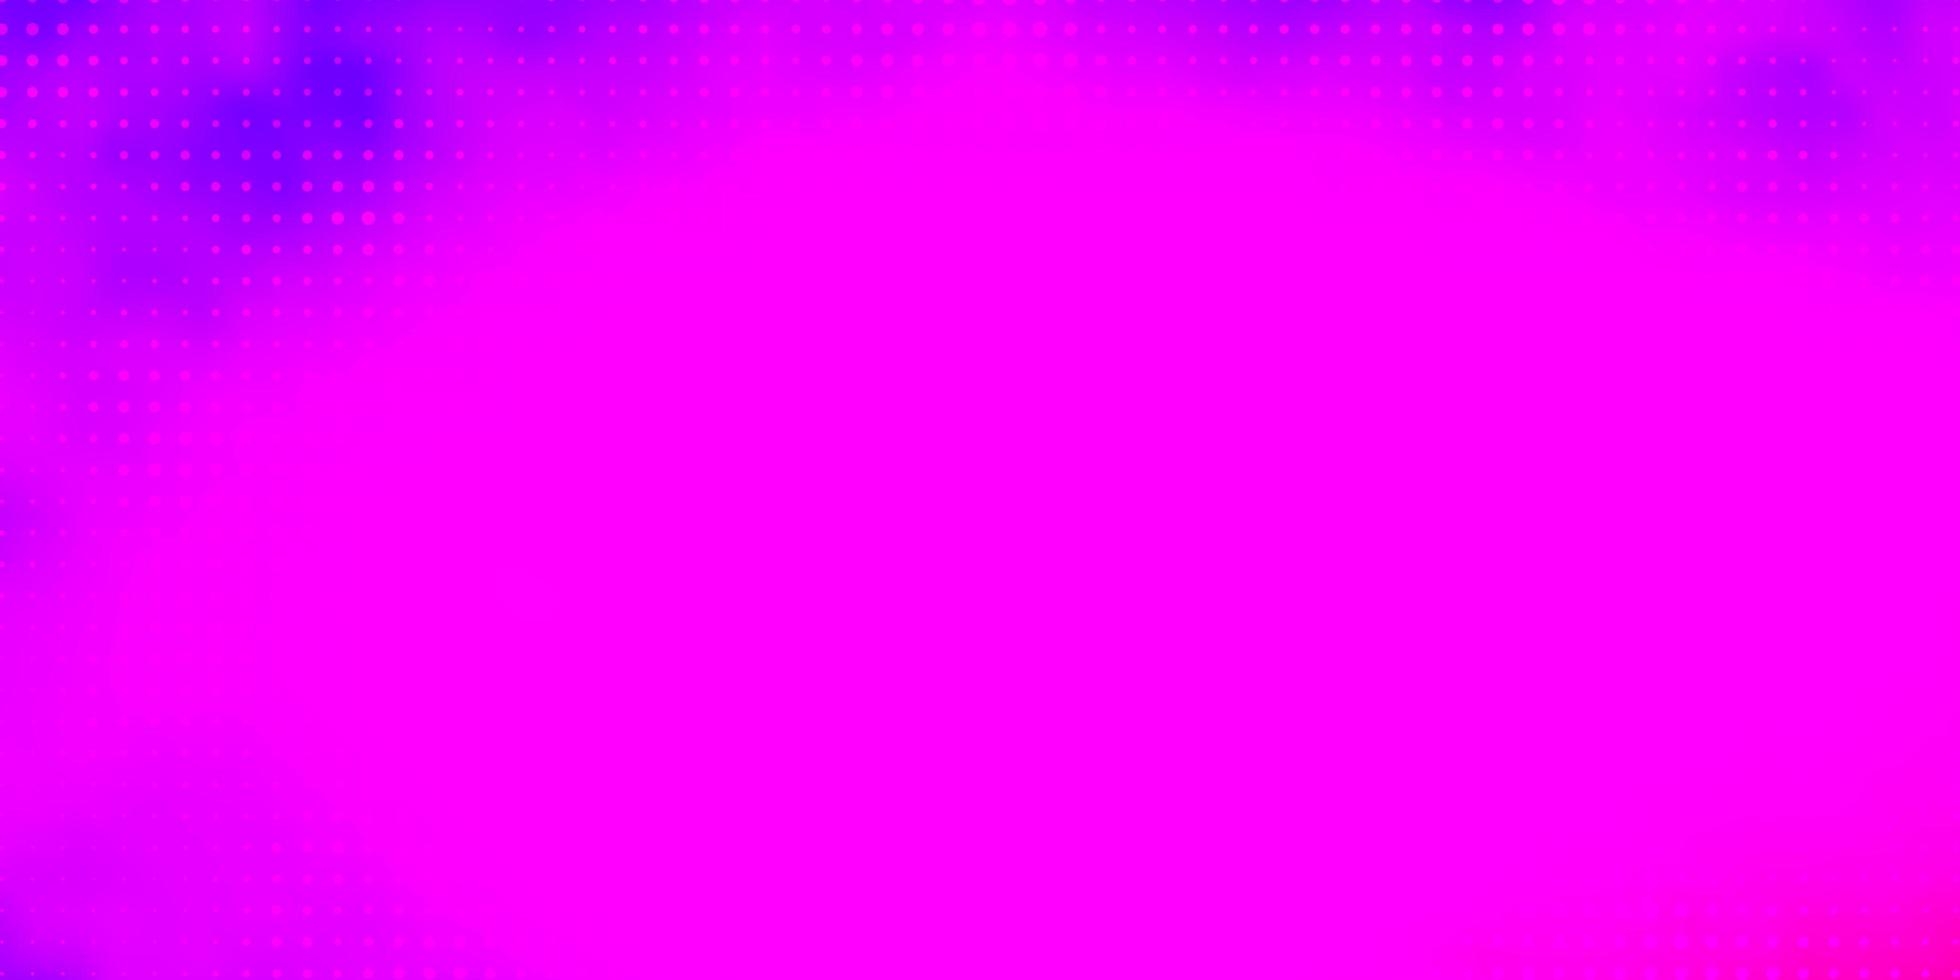 ljuslila, rosa vektorbakgrund med cirklar. färgglad illustration med lutande prickar i naturstil. design för dina reklamfilmer. vektor